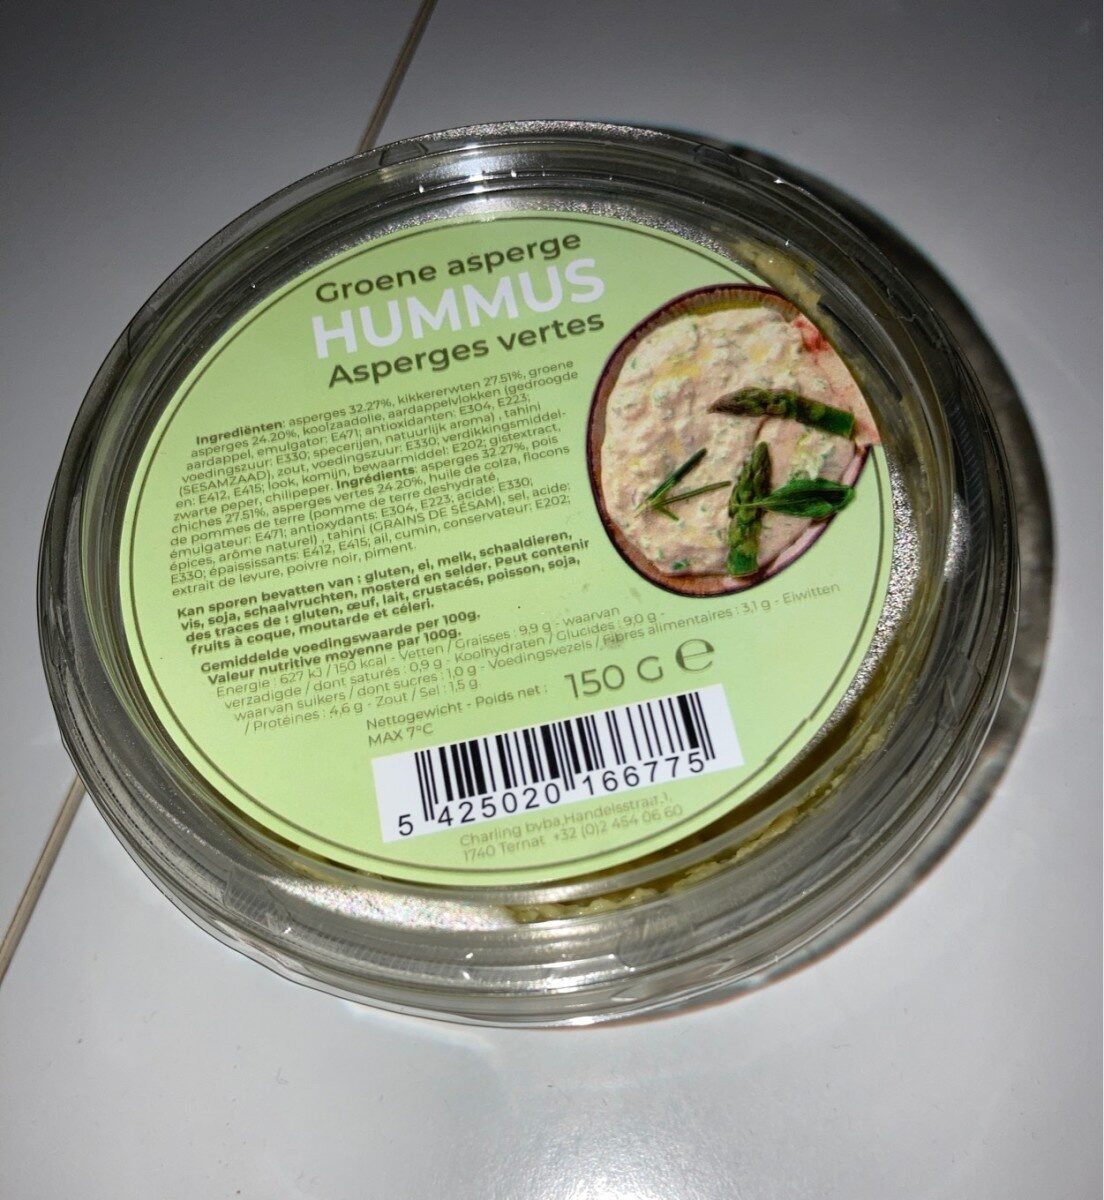 Hummus Asperges vertes - Produit